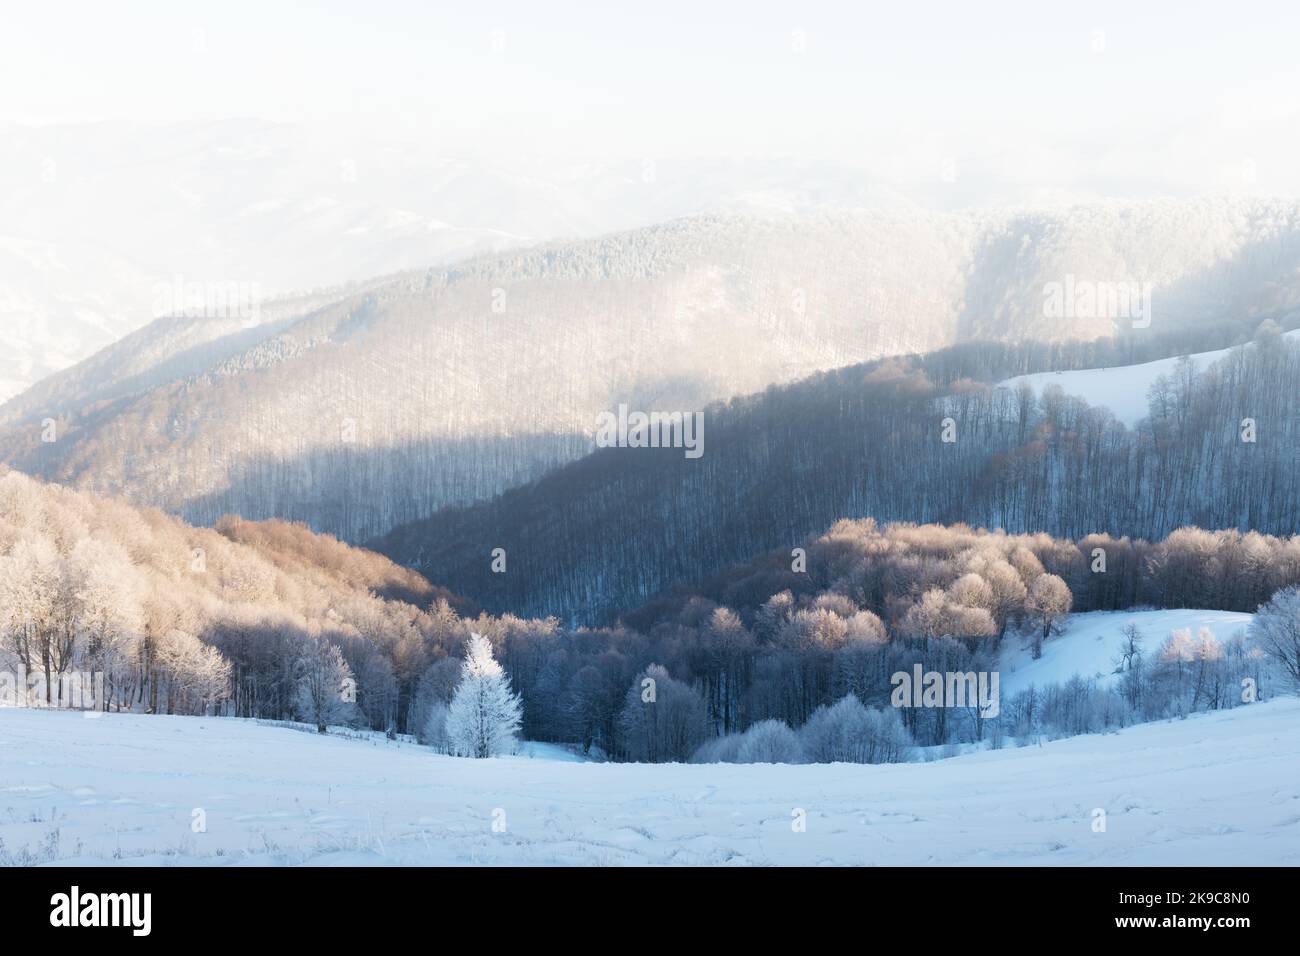 Fantastische Winterlandschaft mit verschneiten Bäumen und schneebedeckten Gipfeln. Karpaten, Ukraine. Weihnachten Urlaub Hintergrund. Landschaftsfotografie Stockfoto